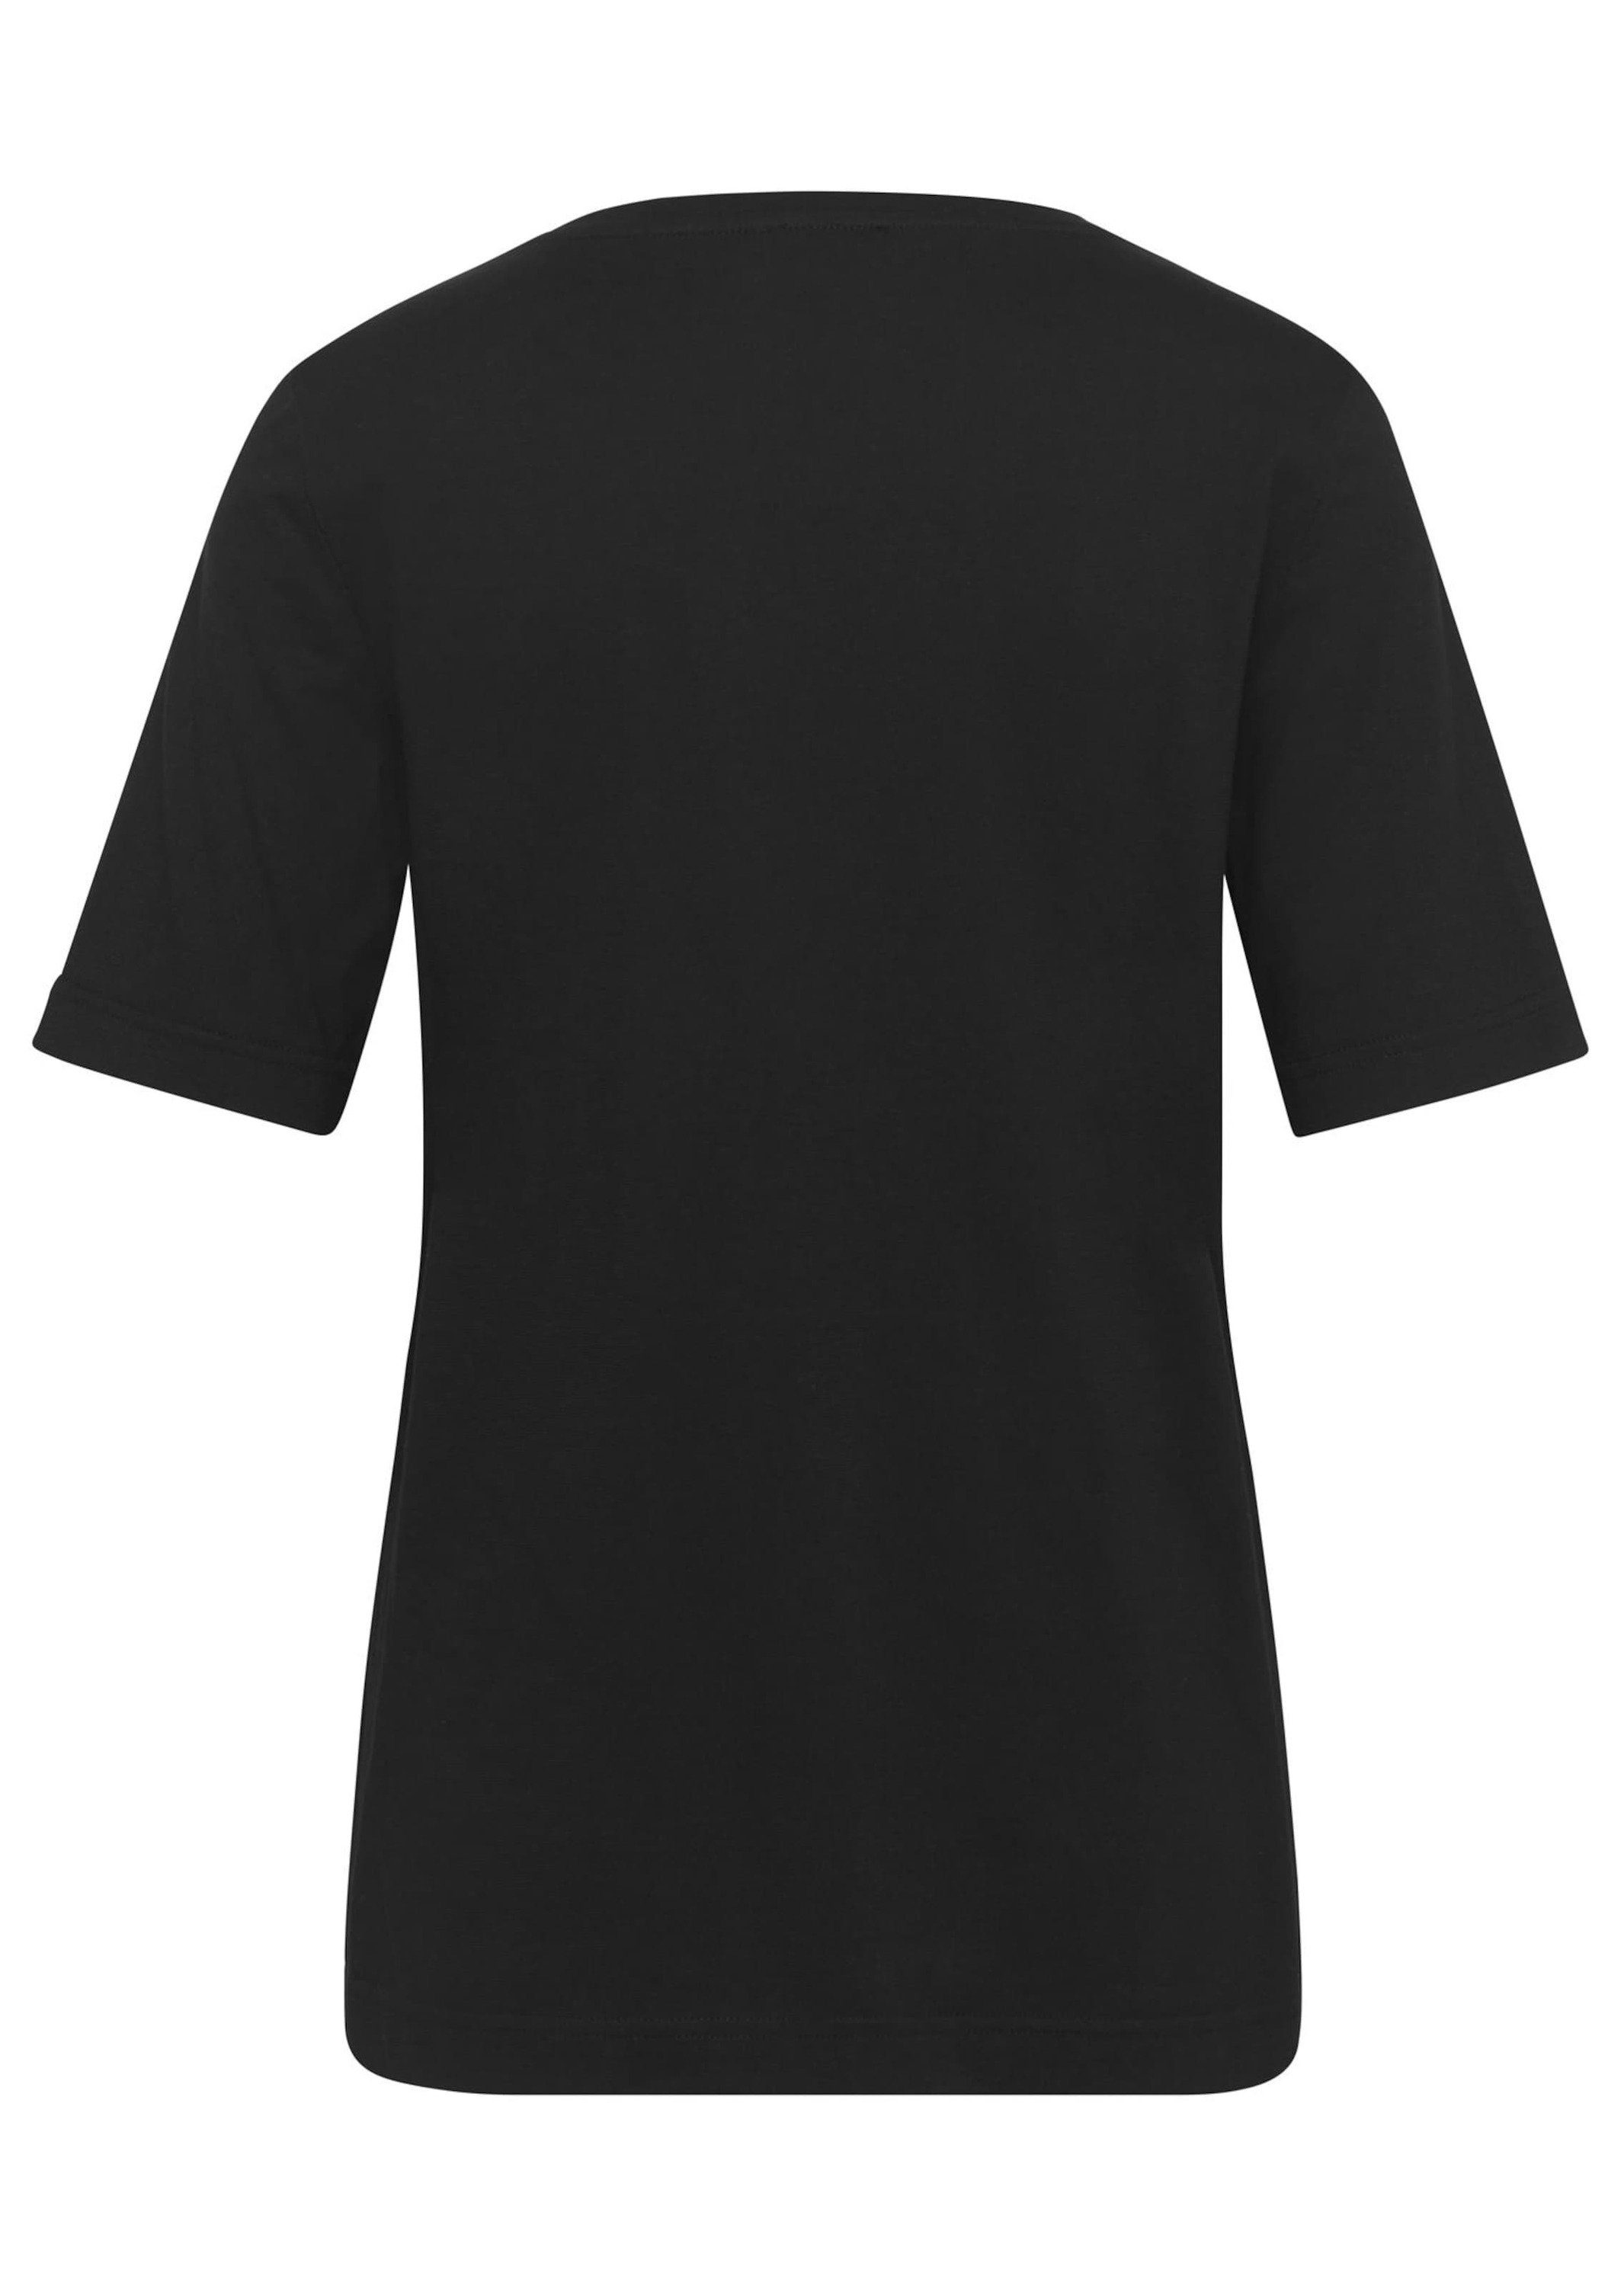 Print-Shirt GOLDNER schwarz mit T-Shirt Glitzersteinchen-Applikation